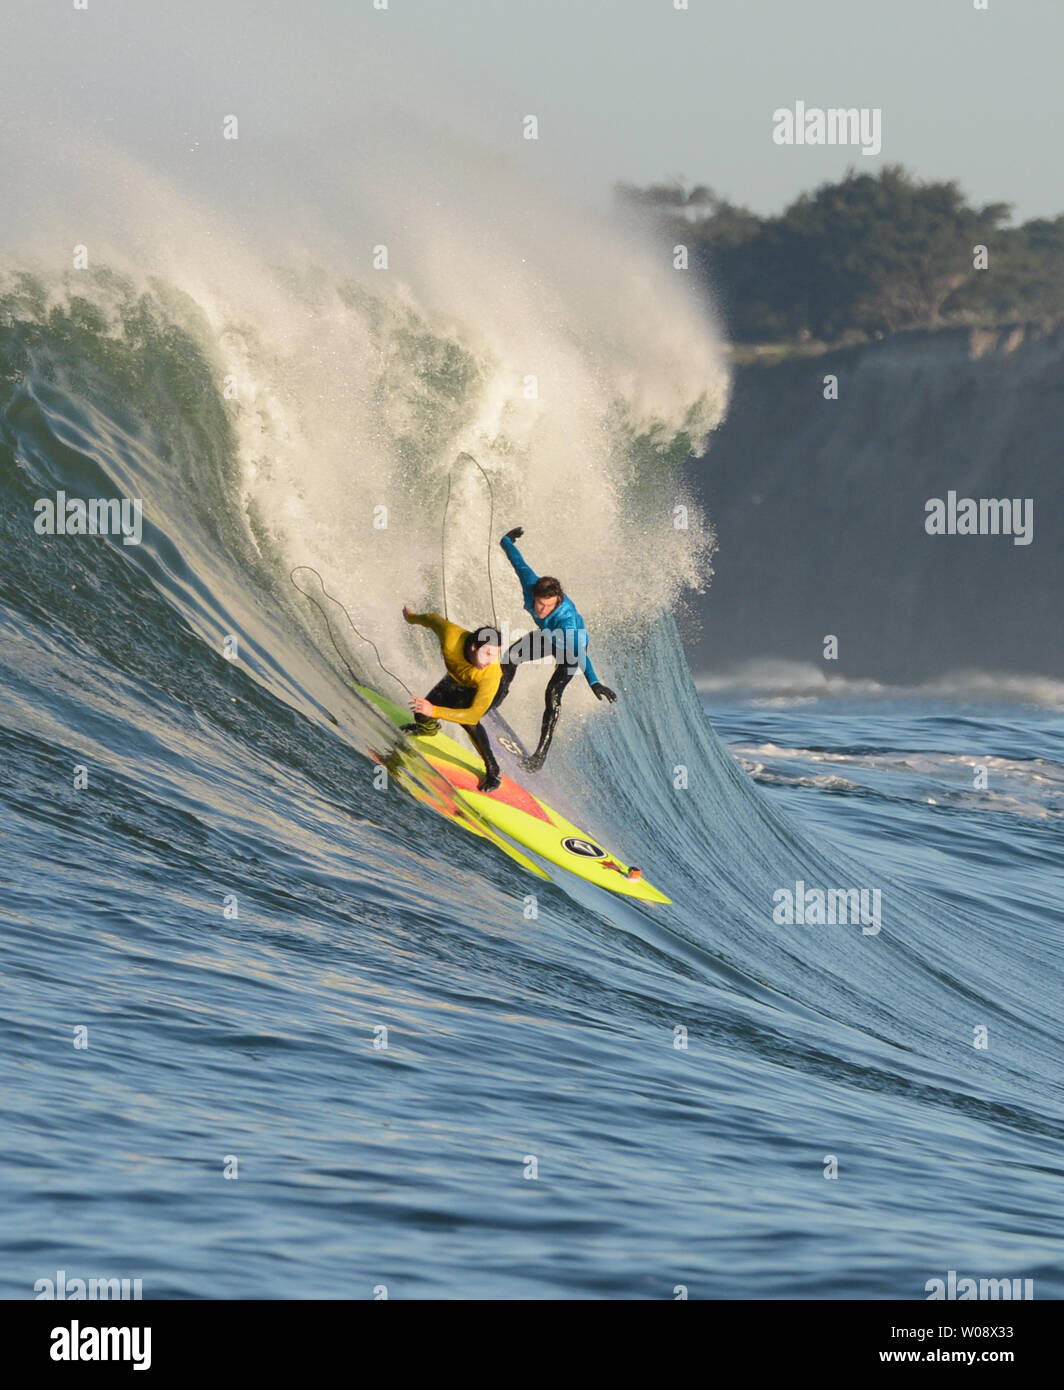 Ken Collins (L) und Rusty Lange eine Welle in der ersten Hitze der Mavericks Einladungs Big Wave surfen Wettbewerb am 20 Januar, 2013 in Half Moon Bay, Kalifornien fahren. UPI/Terry Schmitt Stockfoto